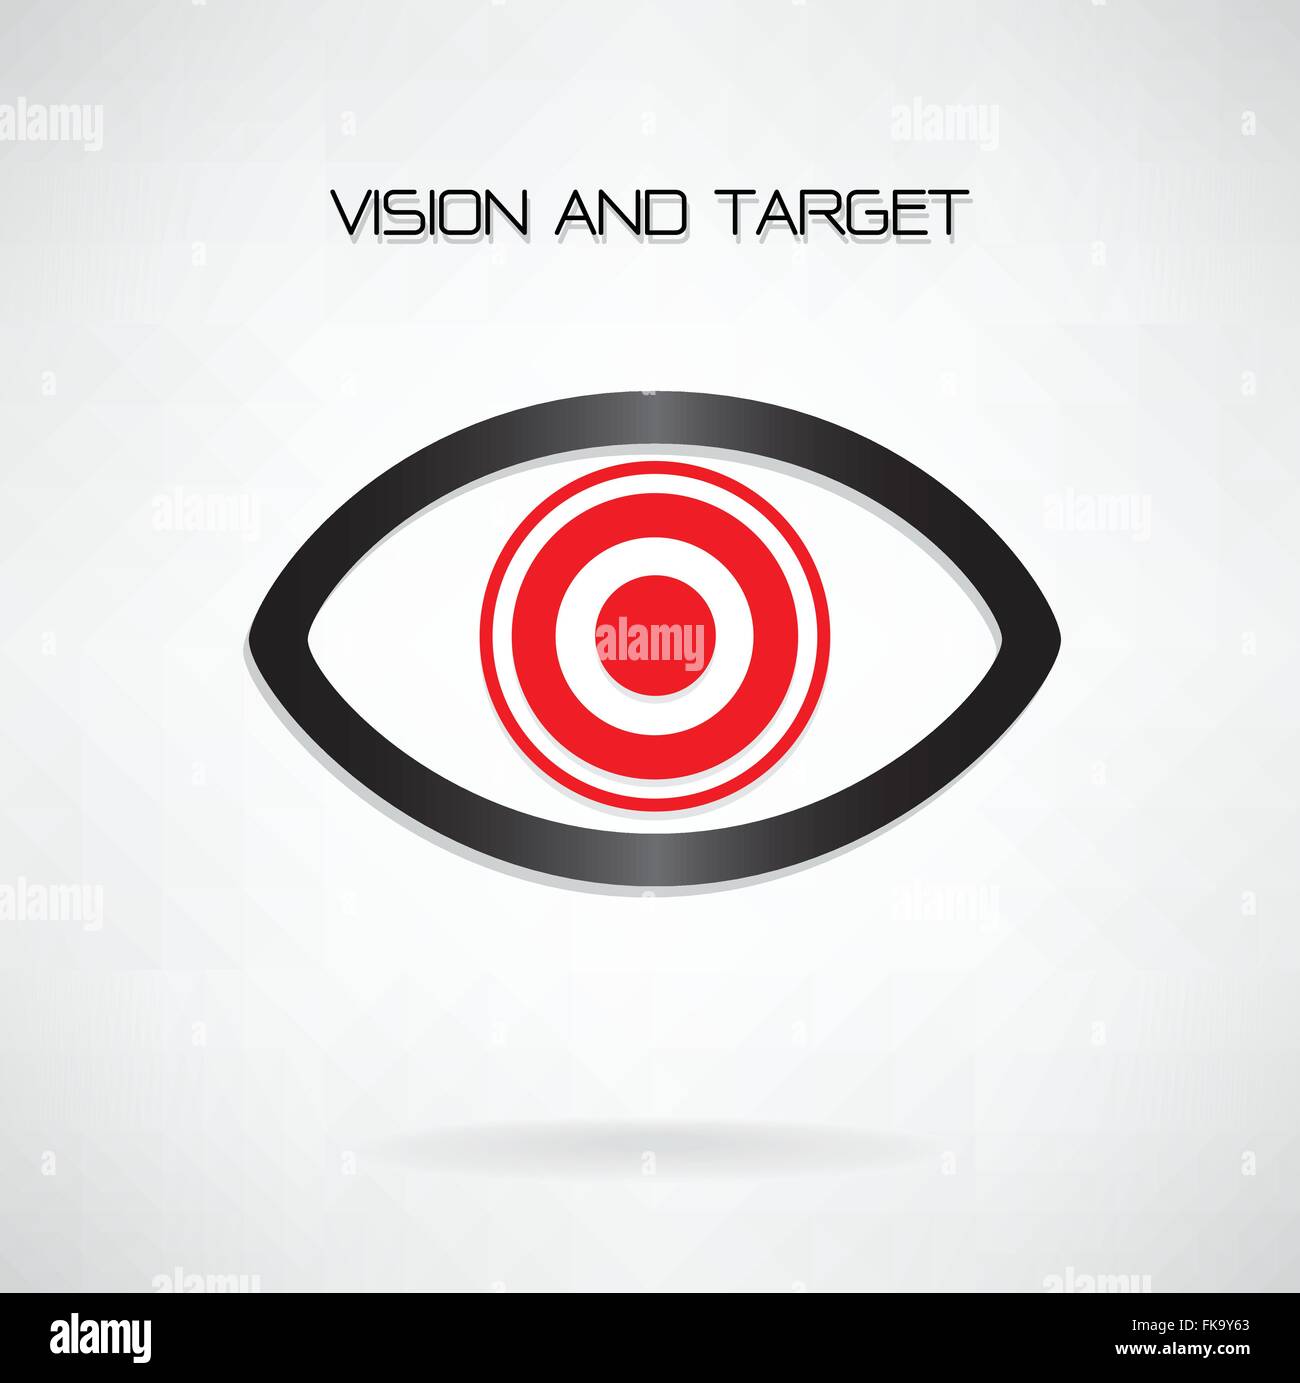 Visione e obiettivo concetto ,simbolo dell'occhio,business idea ,abstract background.illustrazione vettoriale contiene Illustrazione Vettoriale